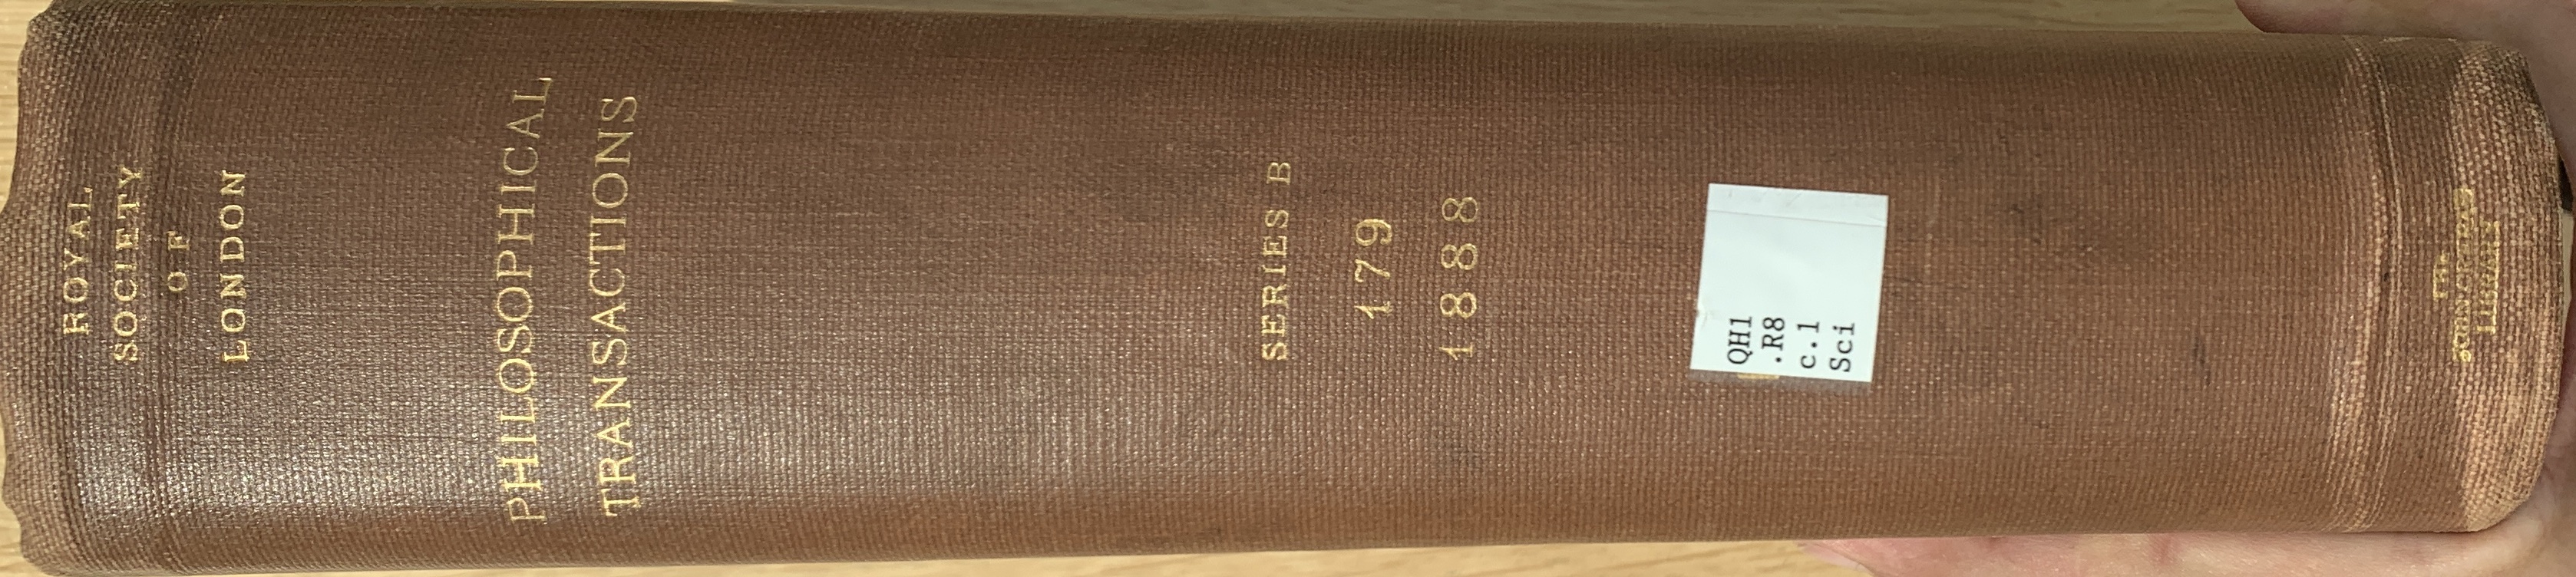 Volume 179B spine